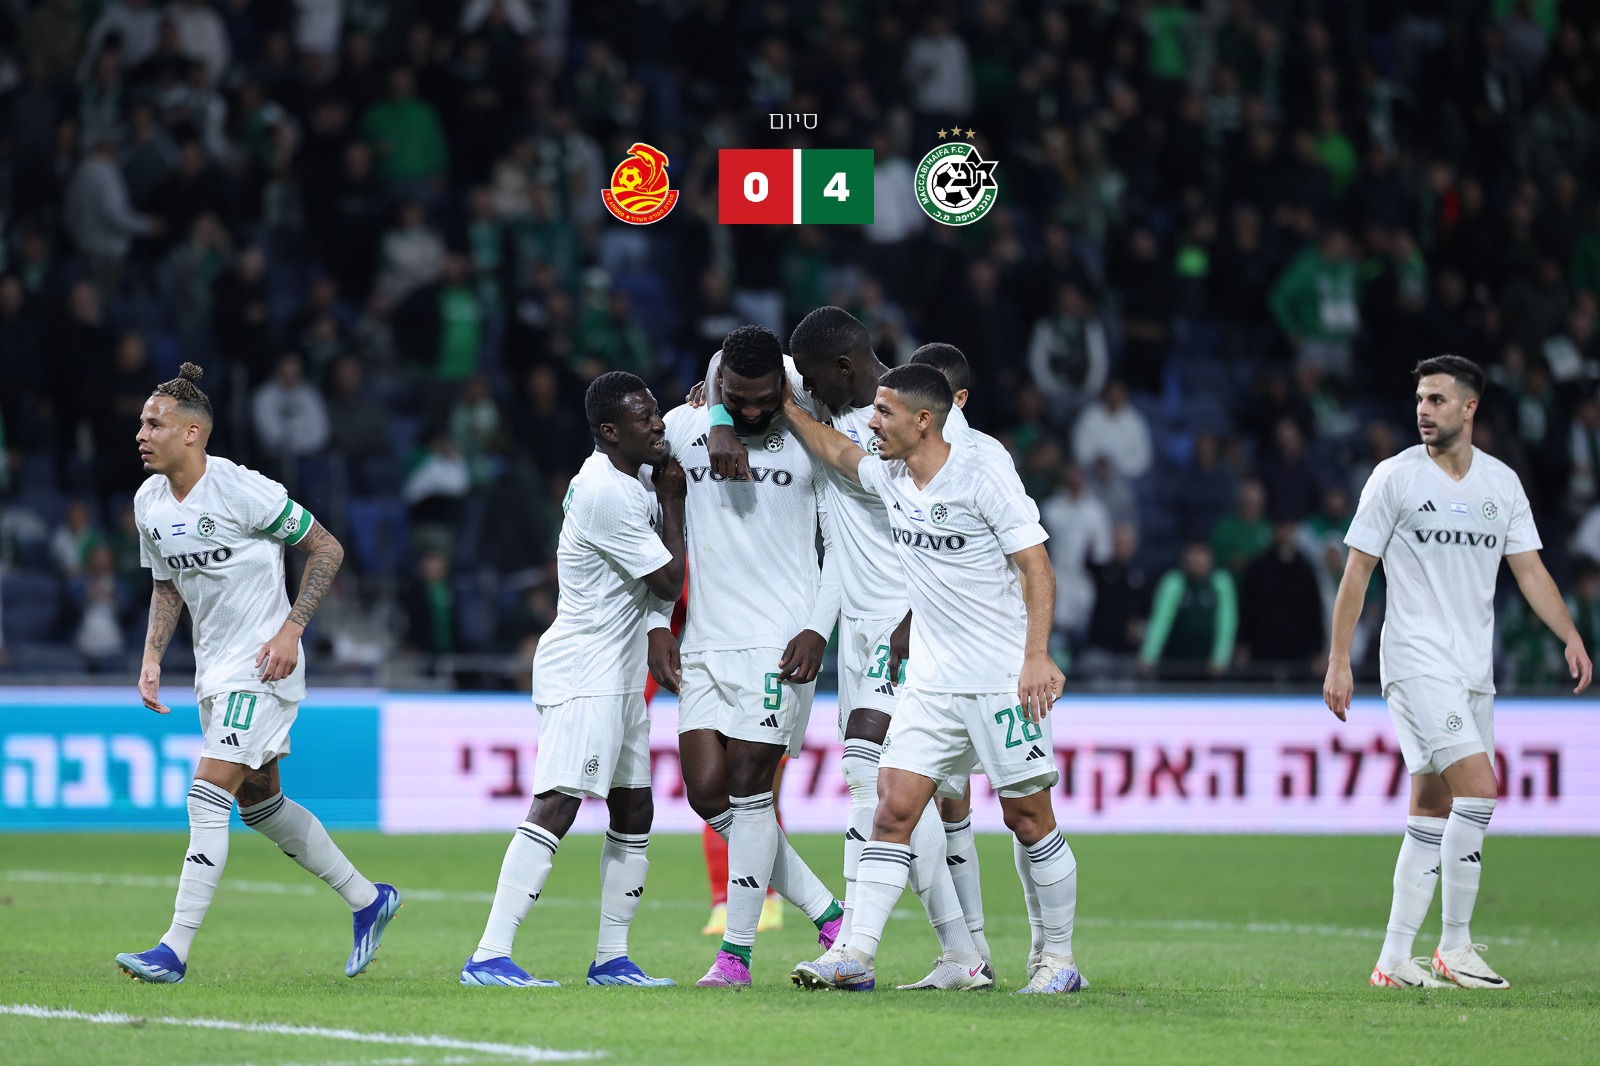 Maccabi - Ashdod 4:0